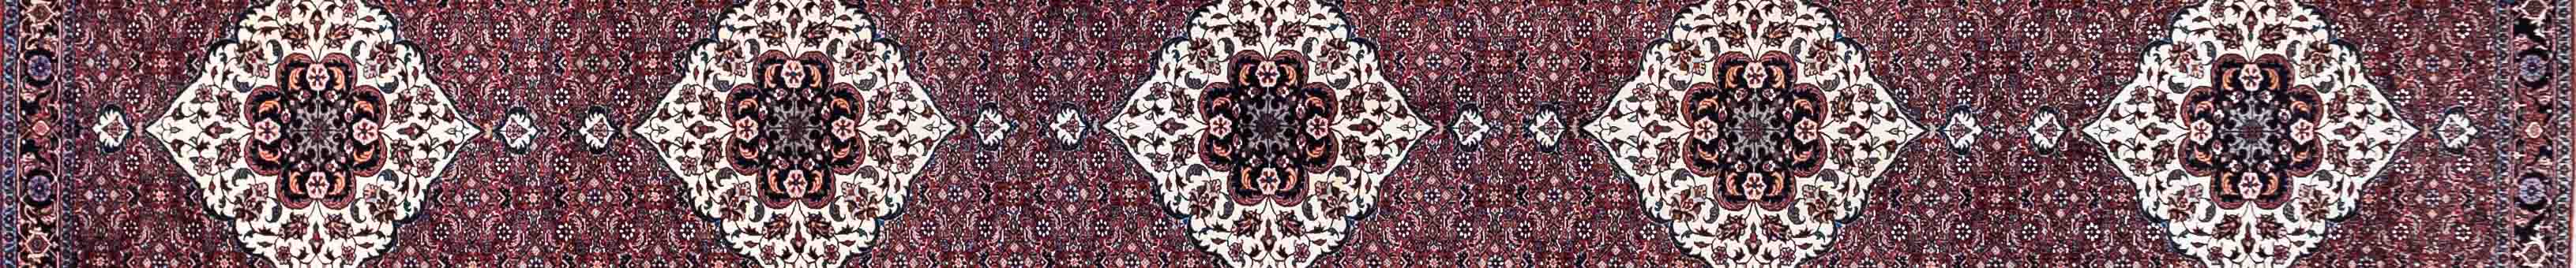 Bidjar Persian Carpet Rug N1Carpet Canada Montreal Tapis Persan 3490